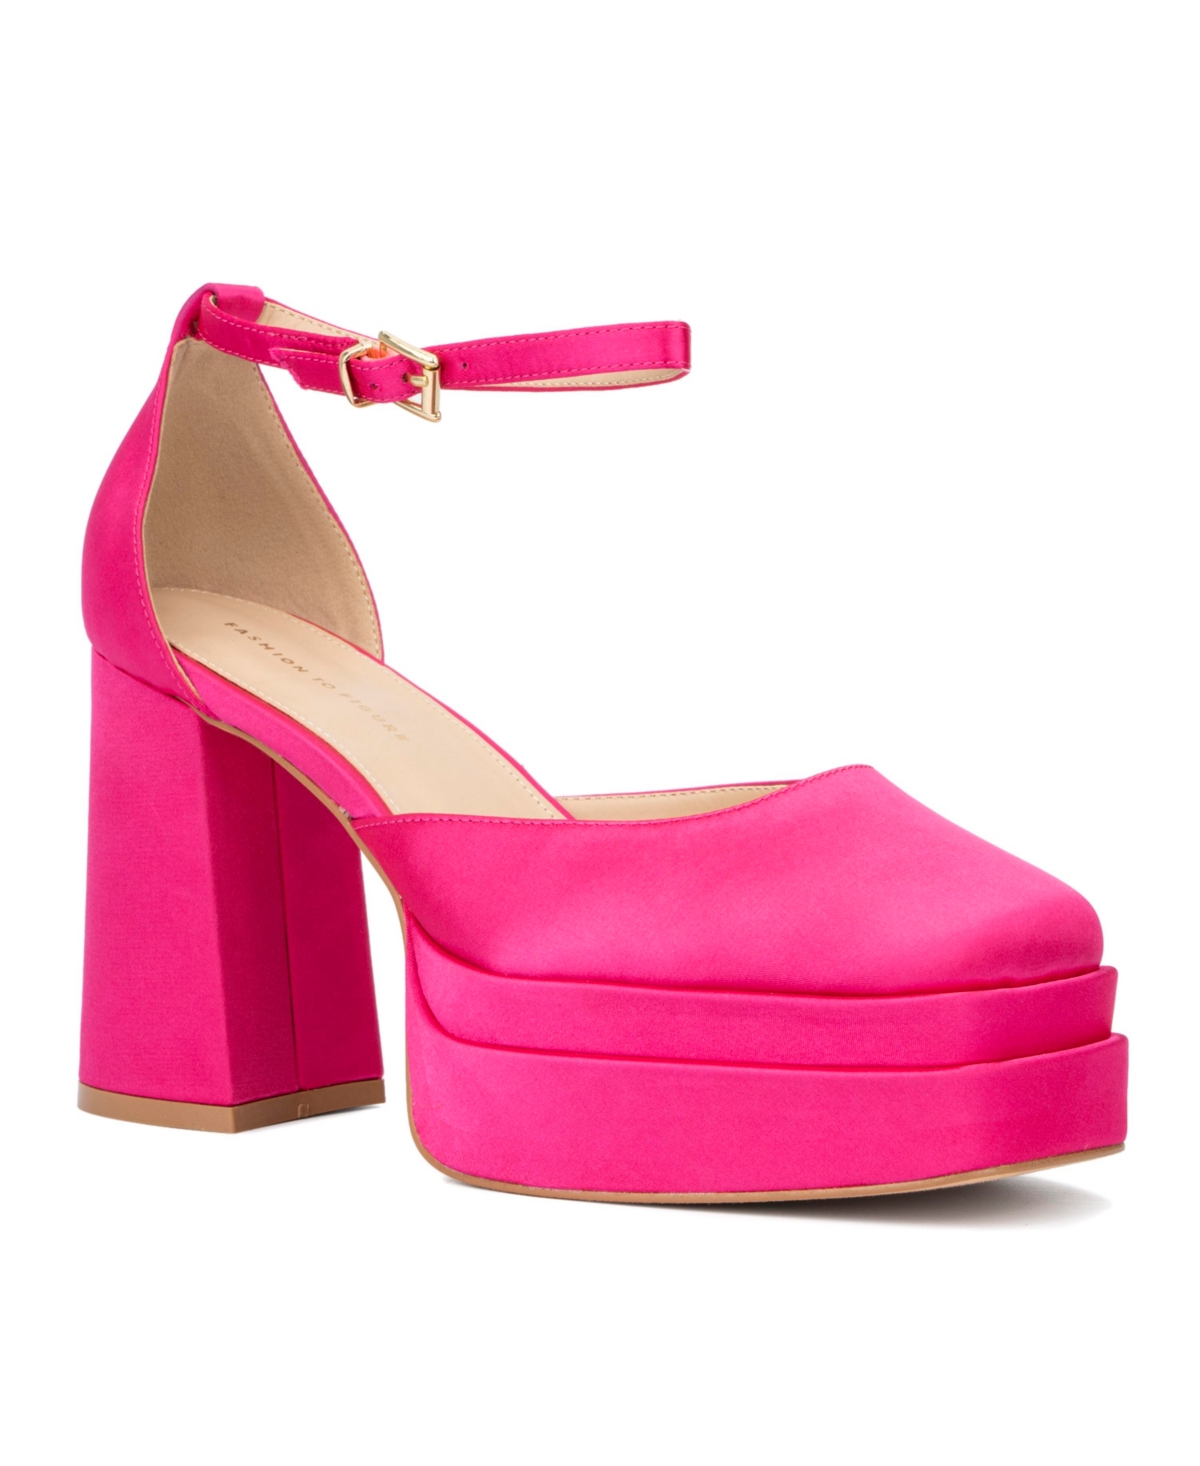 Women's Martine Heels Pumps - Pink